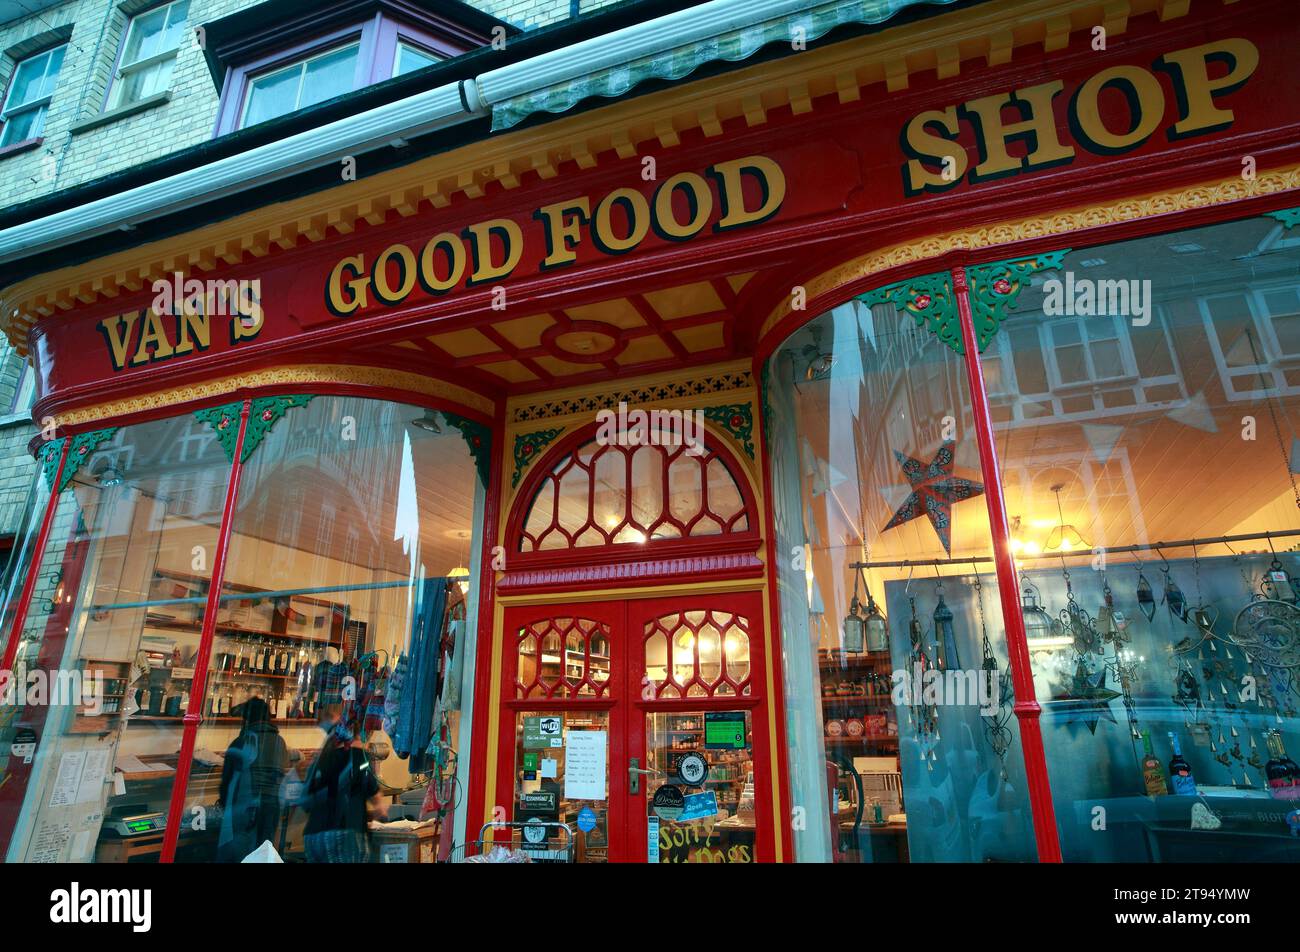 Van's Good Food Shop, Middleton Street, Llandrindod Wells, pays de Galles. Banque D'Images